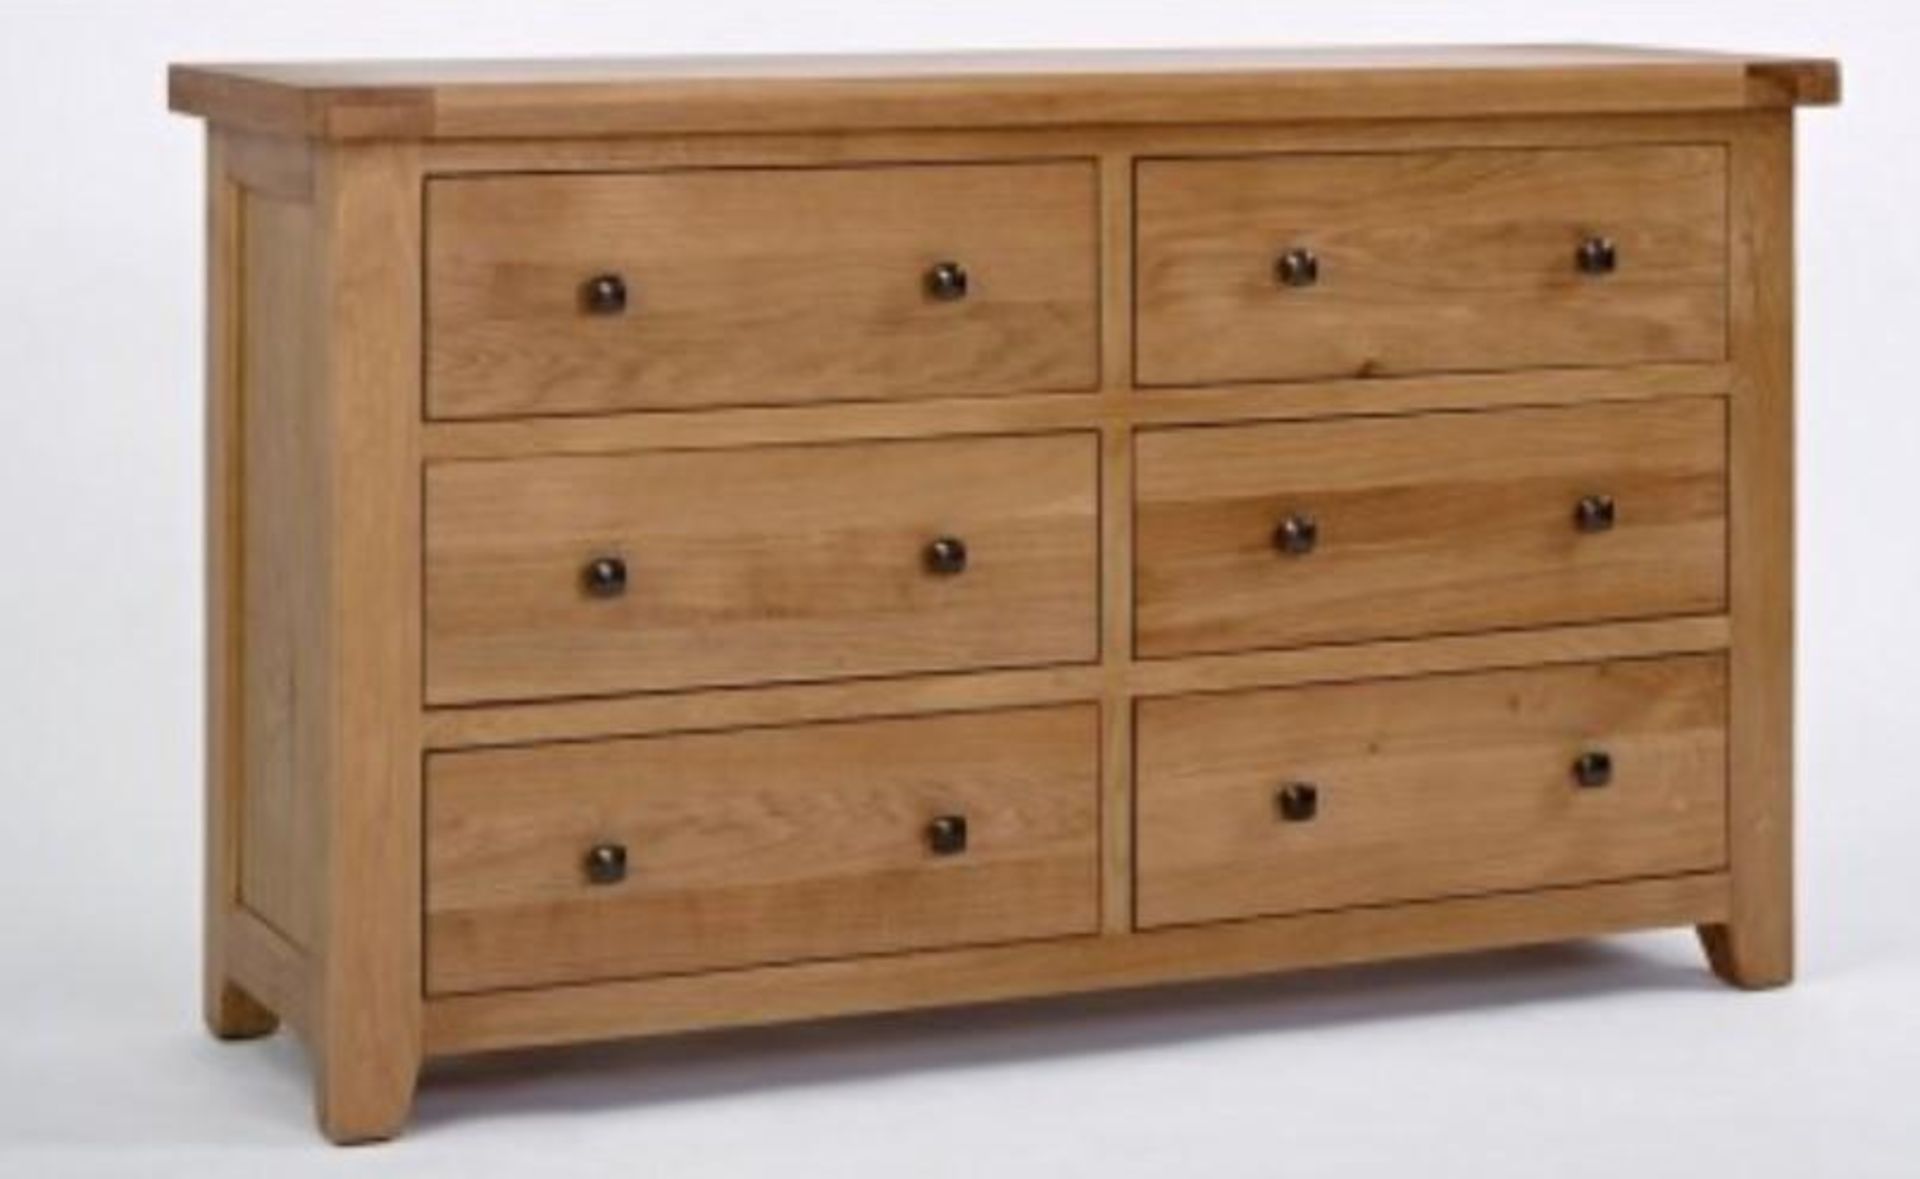 BRAND NEW & BOXED Devon oak 6 drawer wide chest